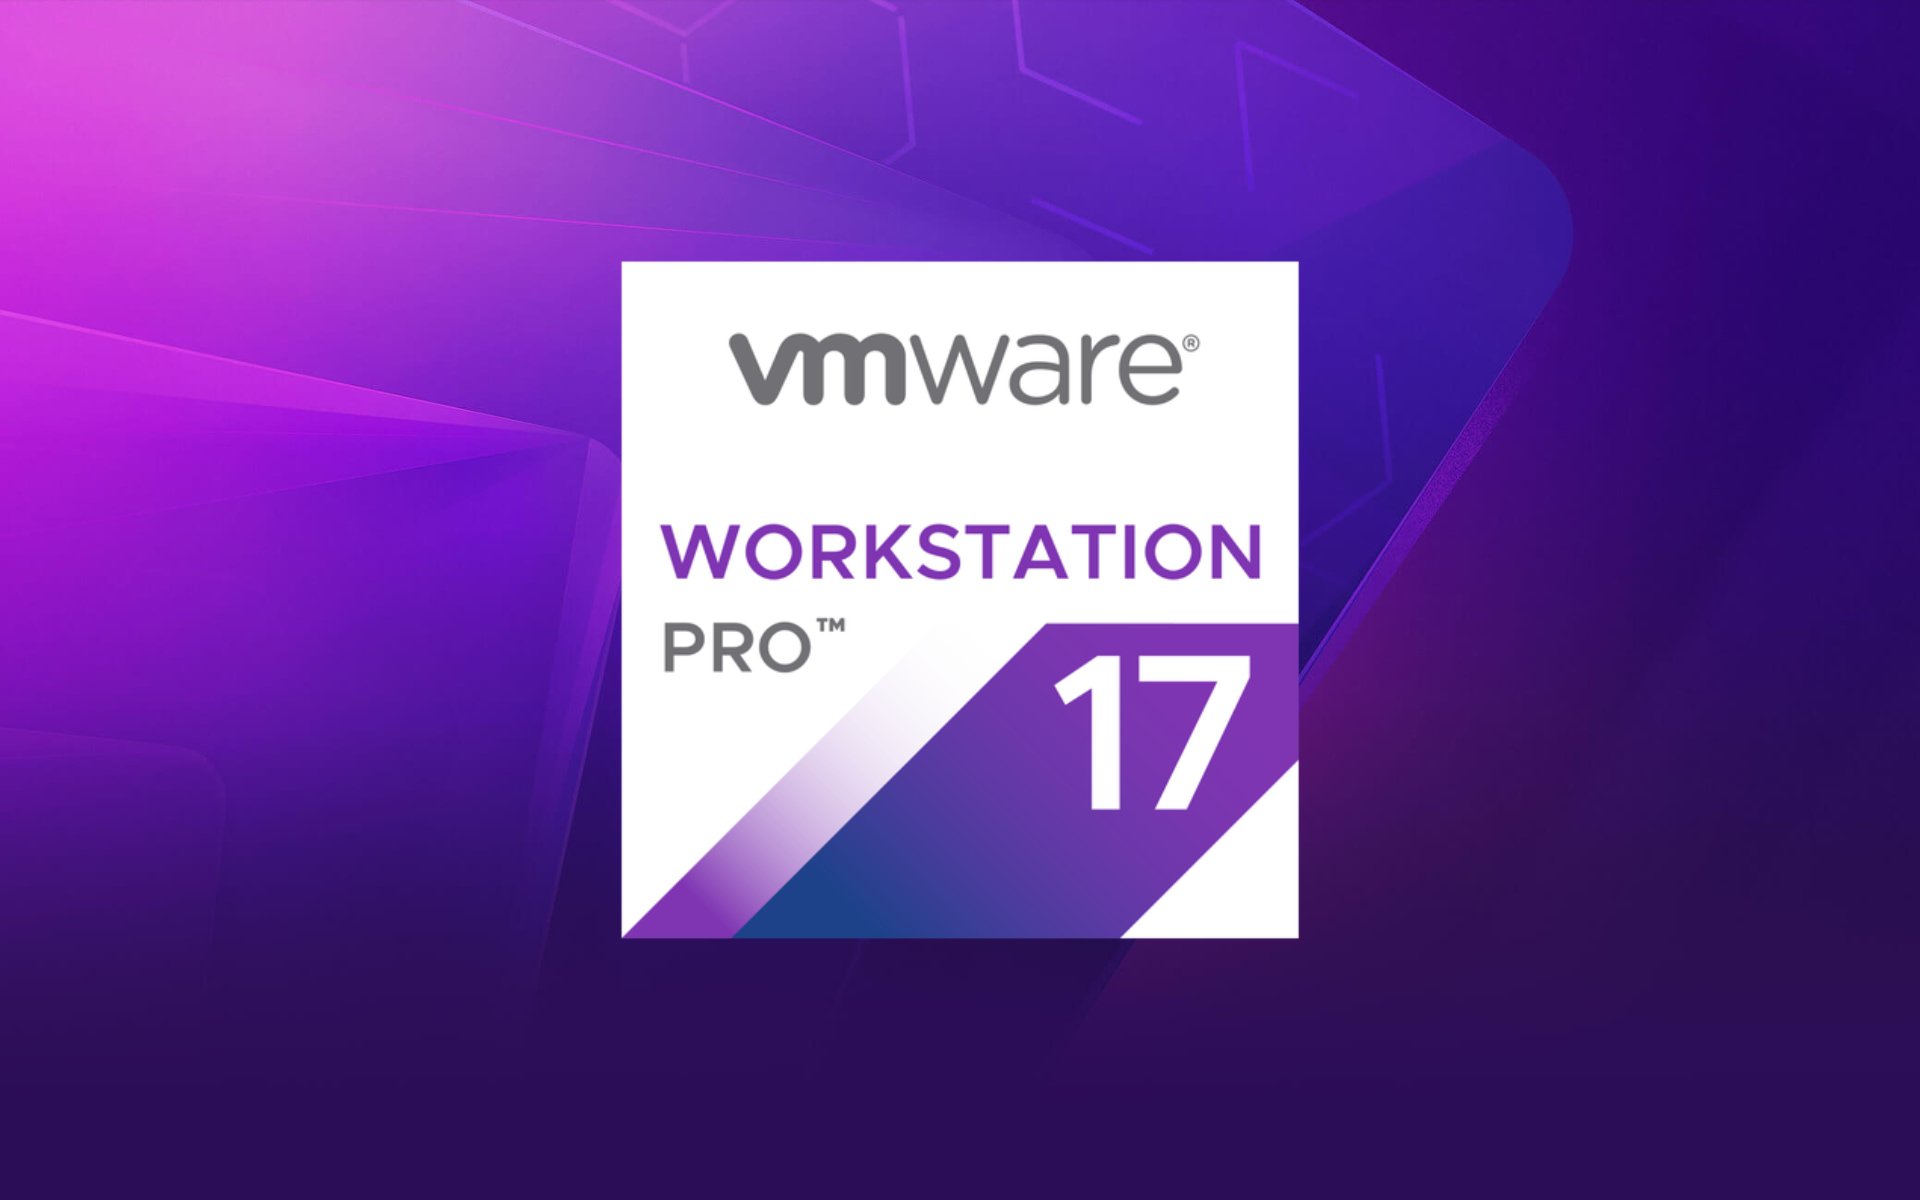 vmware 17 pro workstation